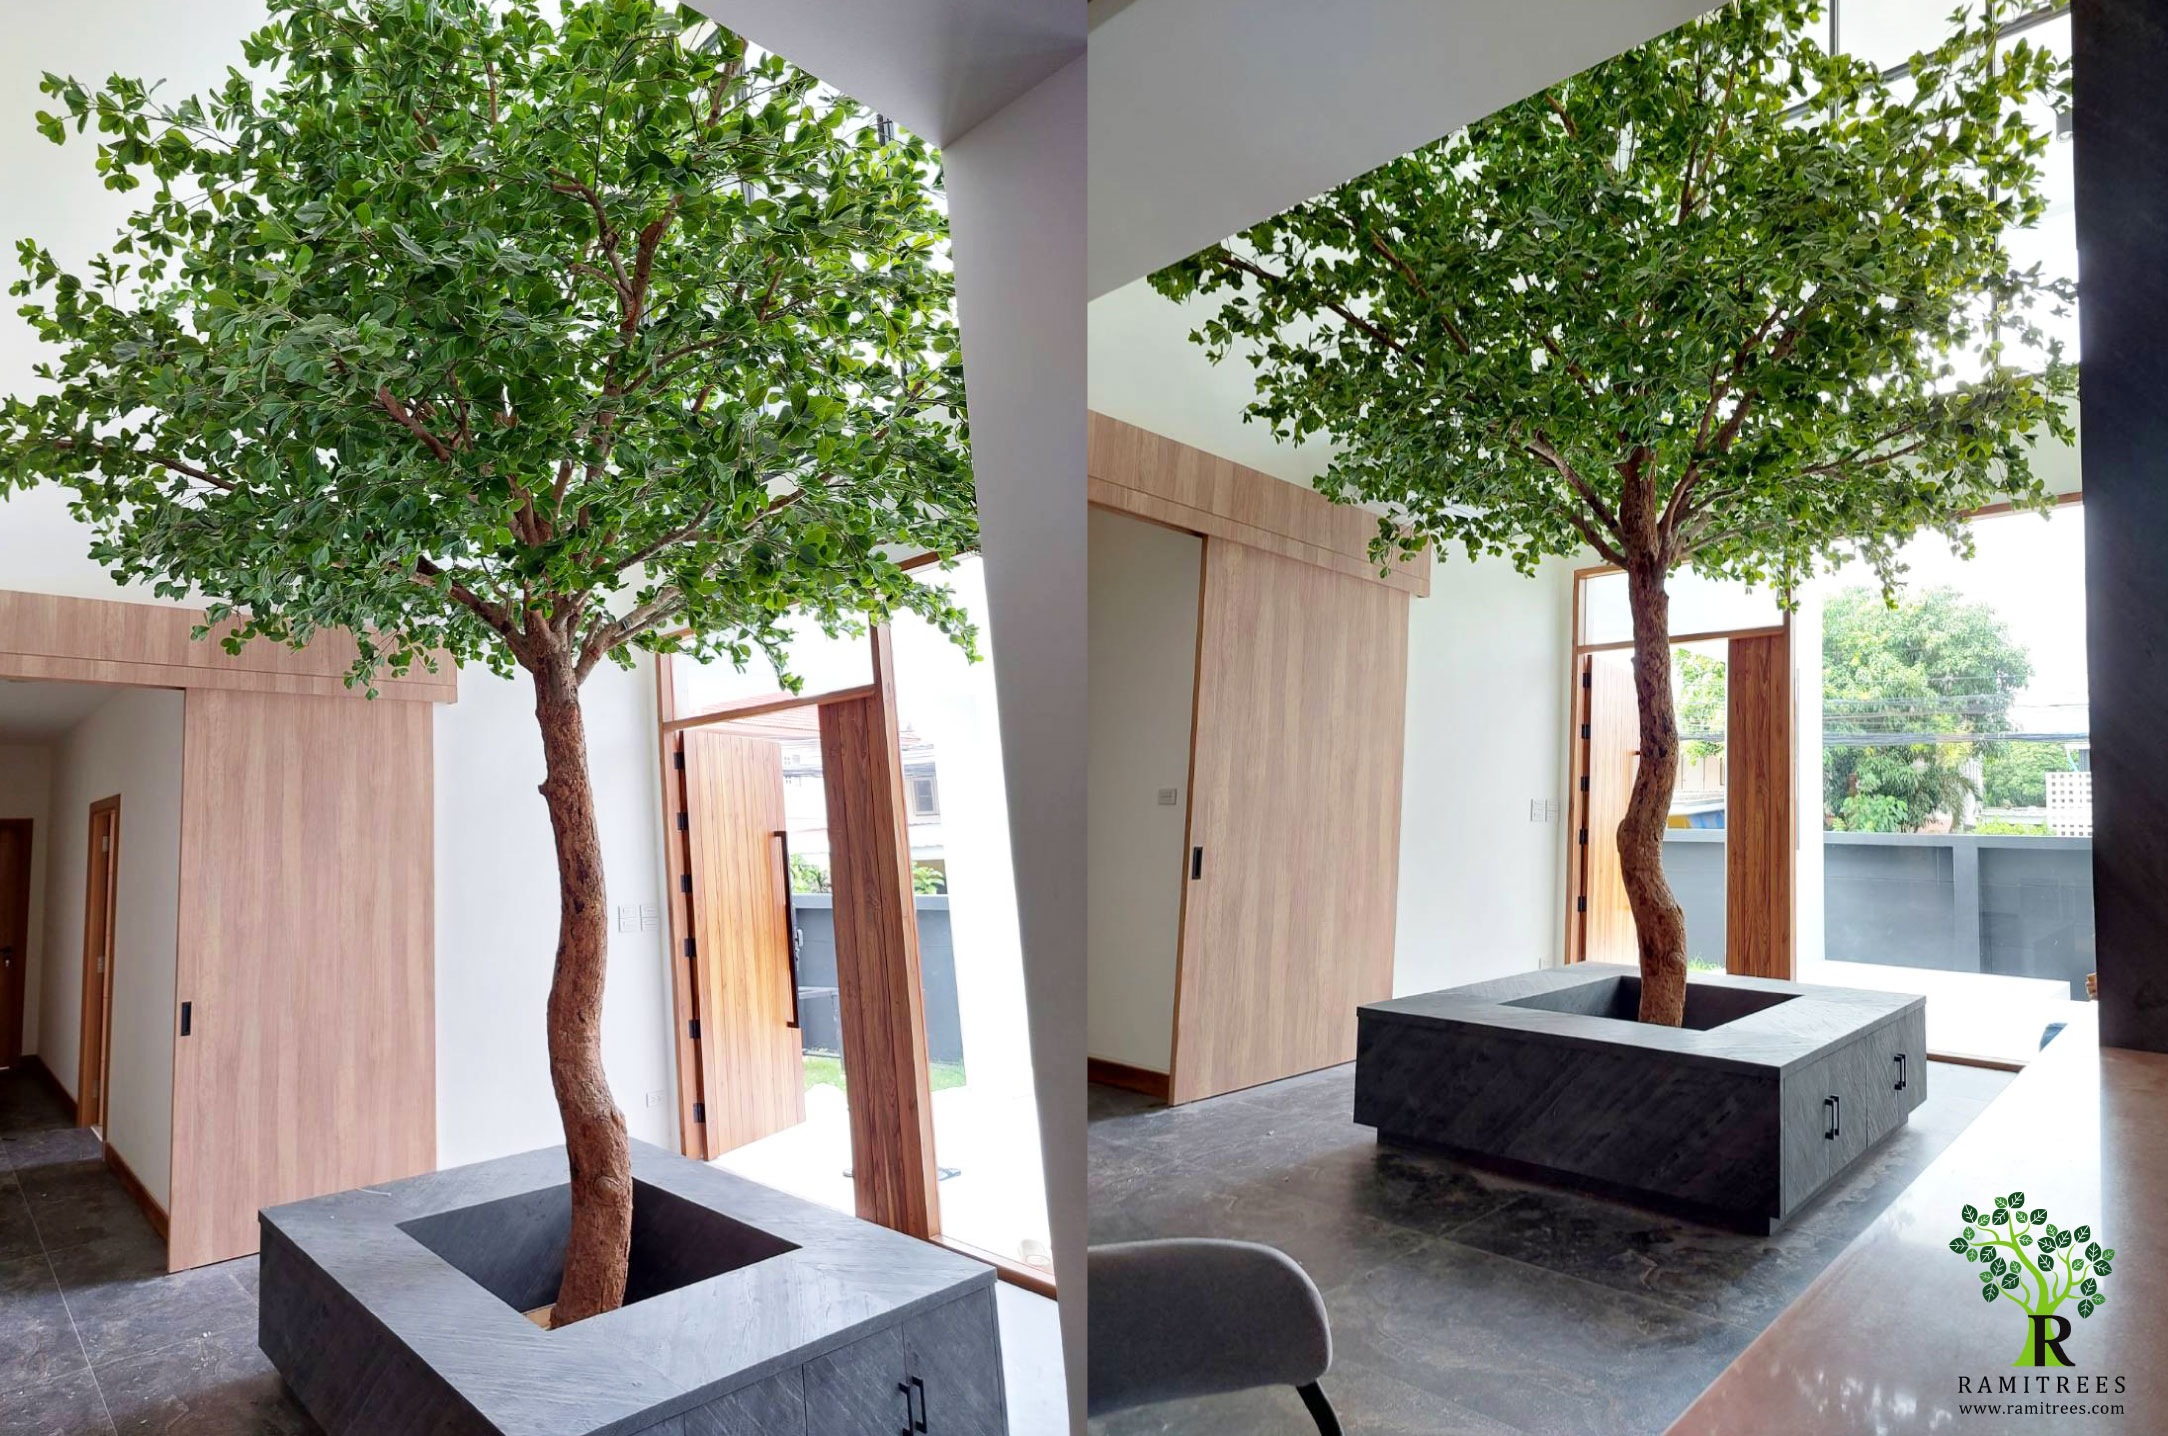 ต้นหูกระจงปลอม ไม้ประดิษฐ์ขนาดใหญ่แต่งบ้าน แต่งห้องโถงกลางบ้าน  ปรับฮวงจุ้ยด้วยต้นไม้ปลอมเสริมทรัพย์ เสริมบารมี (สูง 4.5 เมตร กว้าง 3 เมตร  , ลำต้นไม้จริง) - Ramitrees (รมิทรี)